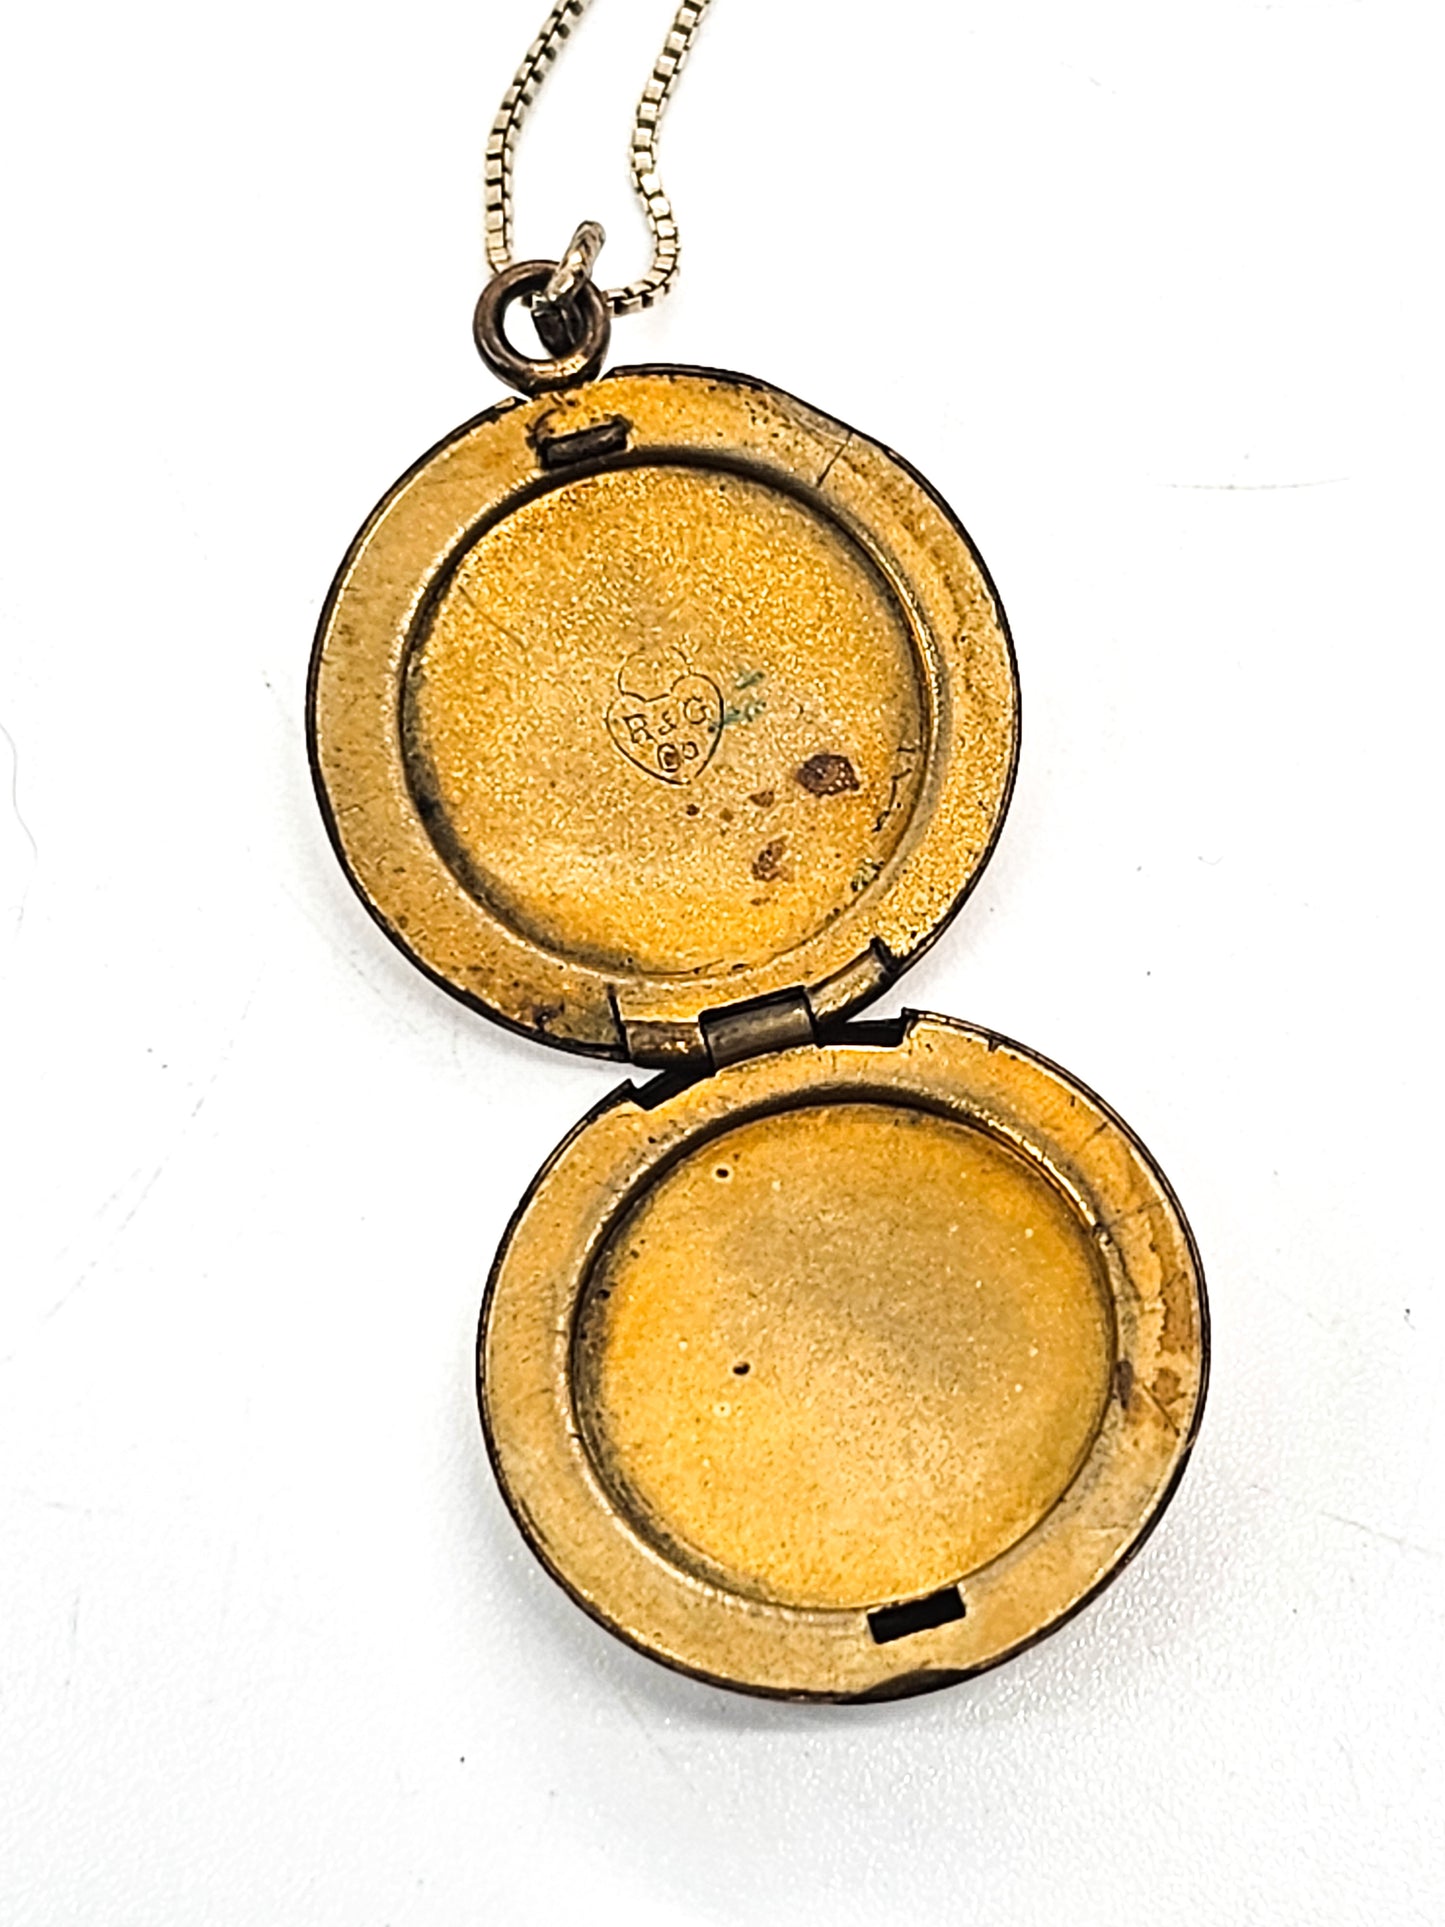 R & G Co. antique gold filled etched signed locket necklace